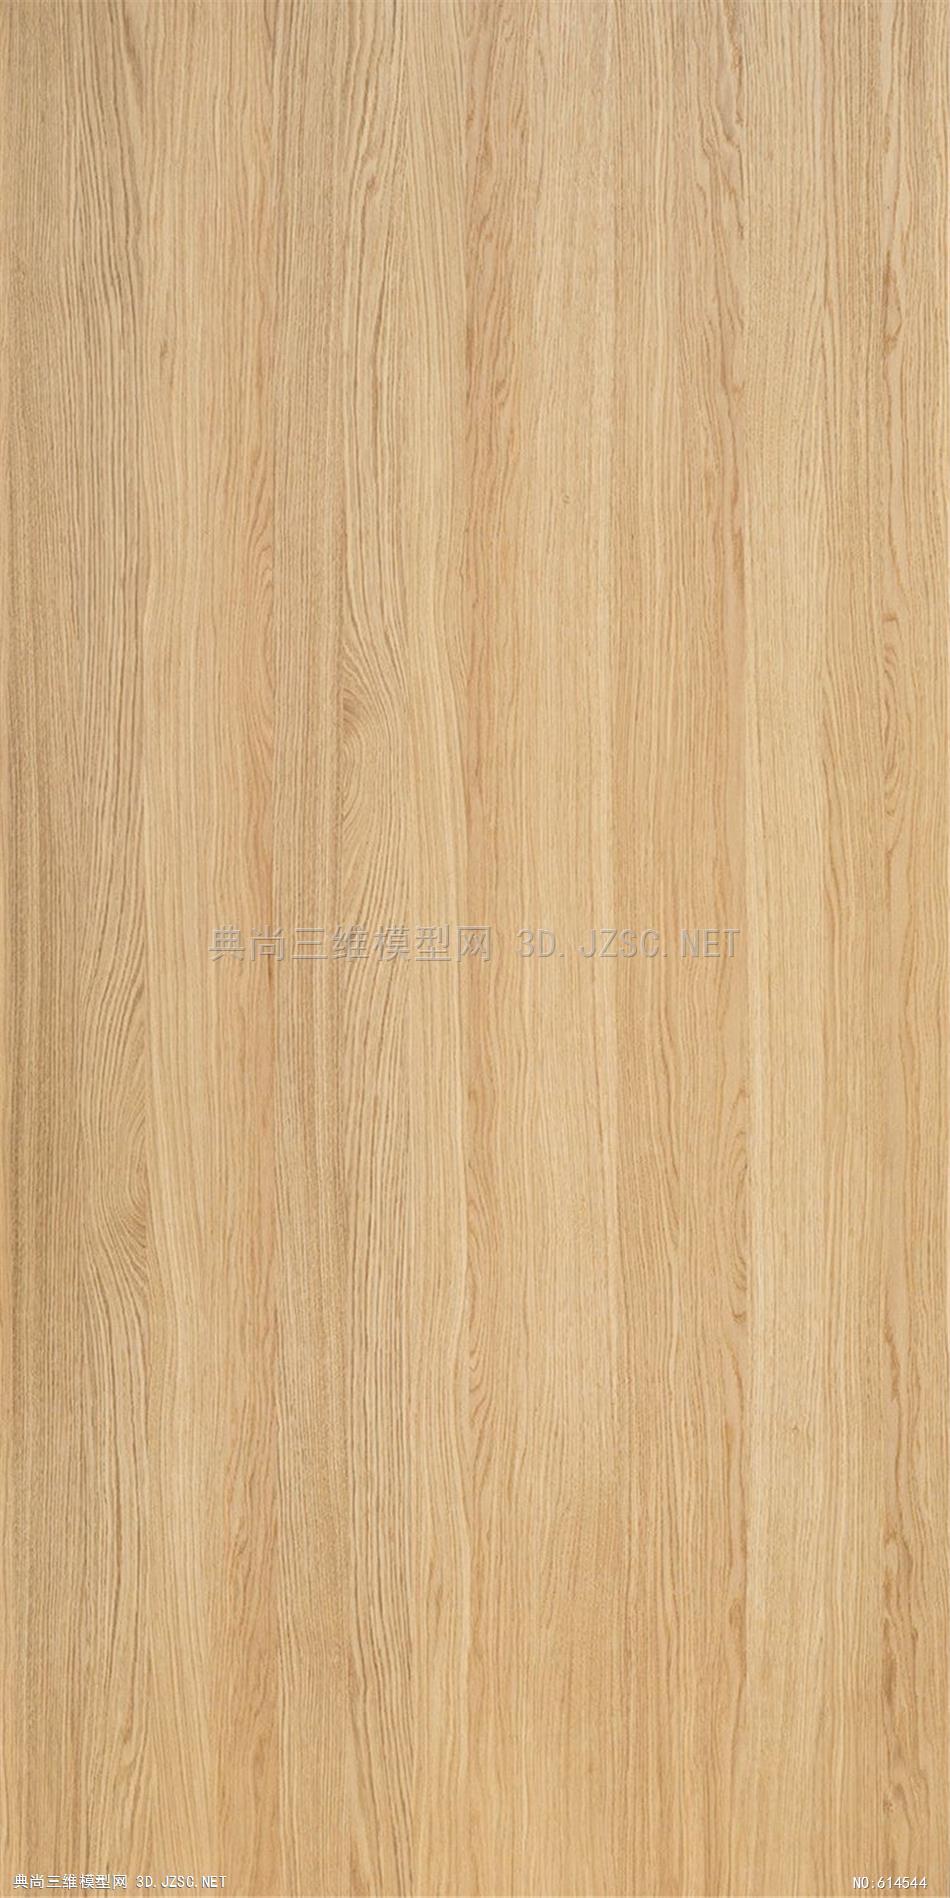 木饰面木纹木材高清材质贴图337材质贴图